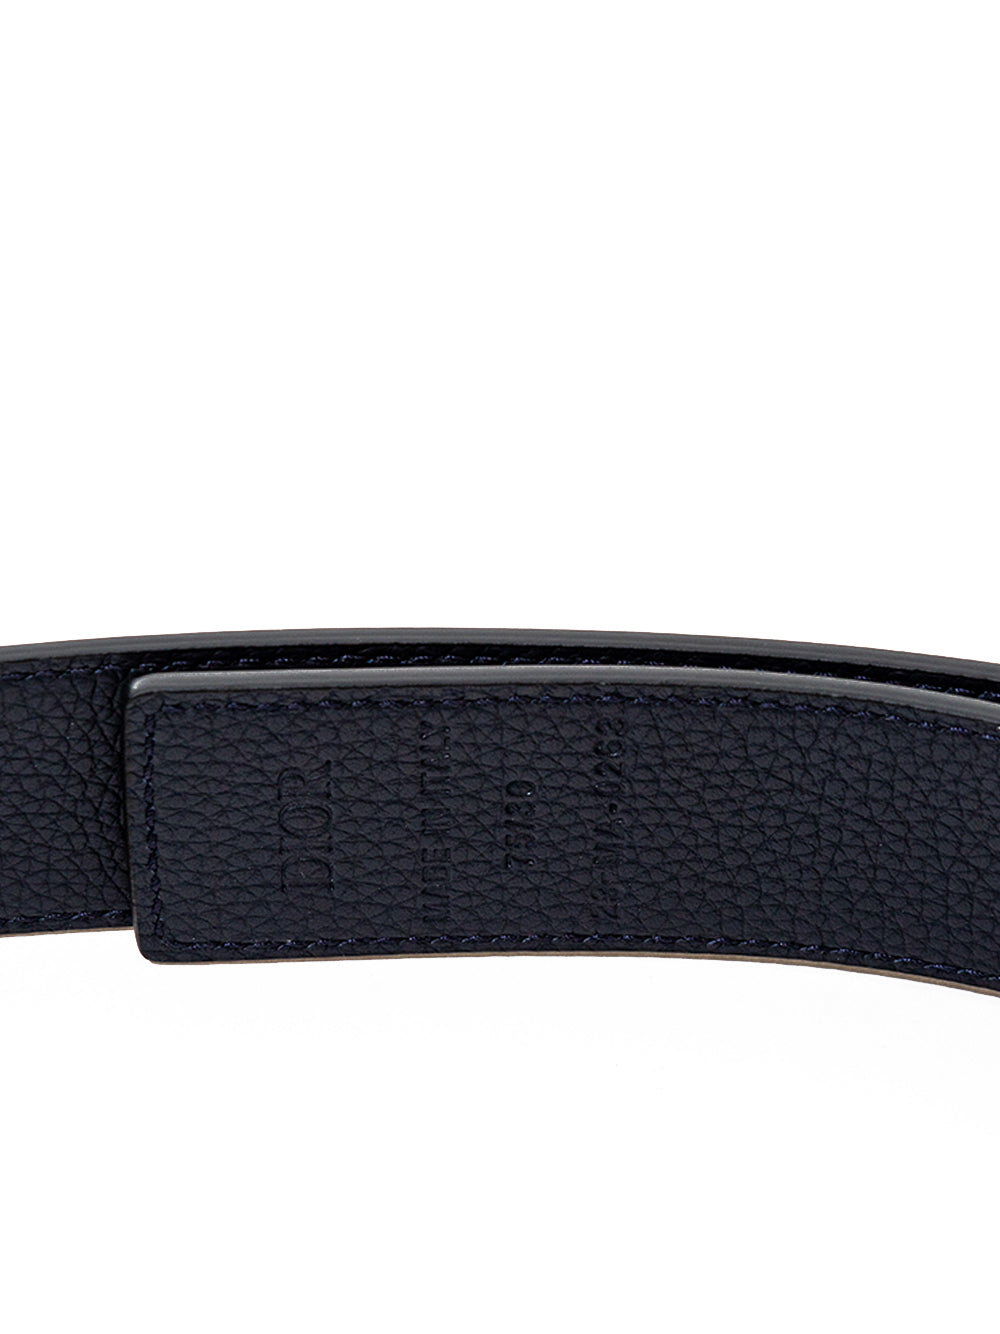 Elegant Black Leather Belt with Golden Buckle